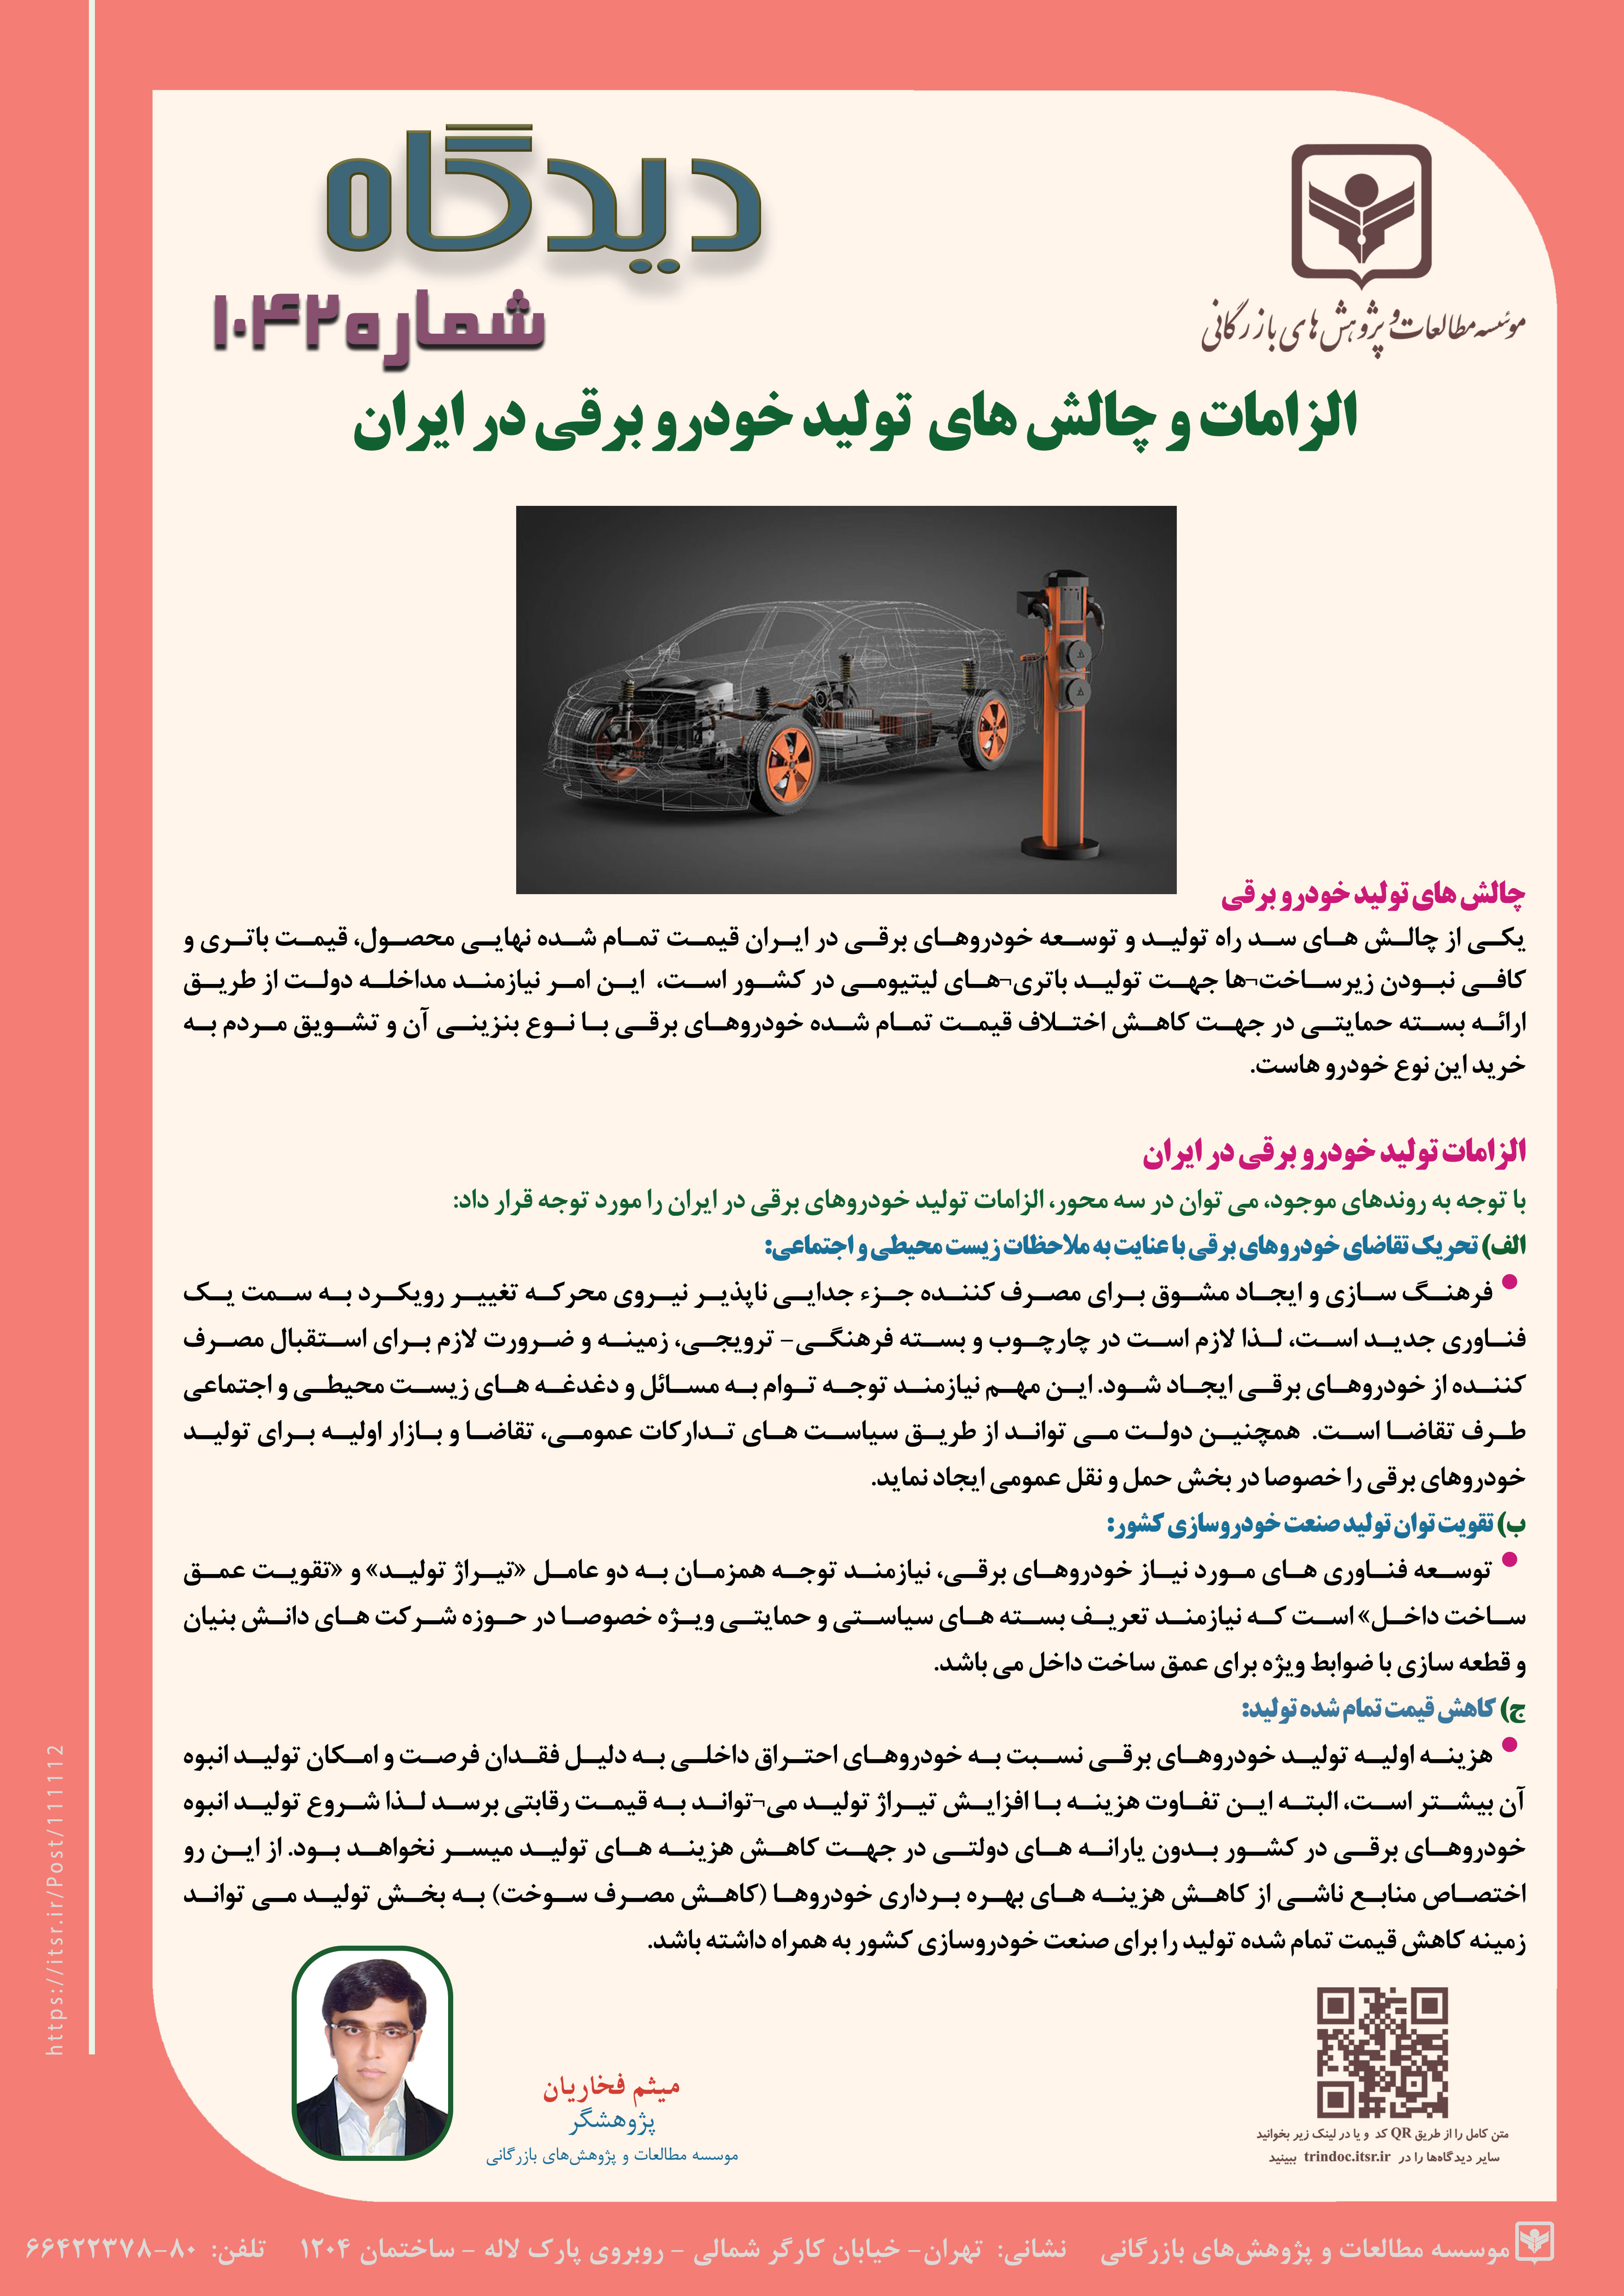 دیدگاه 1042: الزامات و چالش های تولید خودرو برقی در ایران